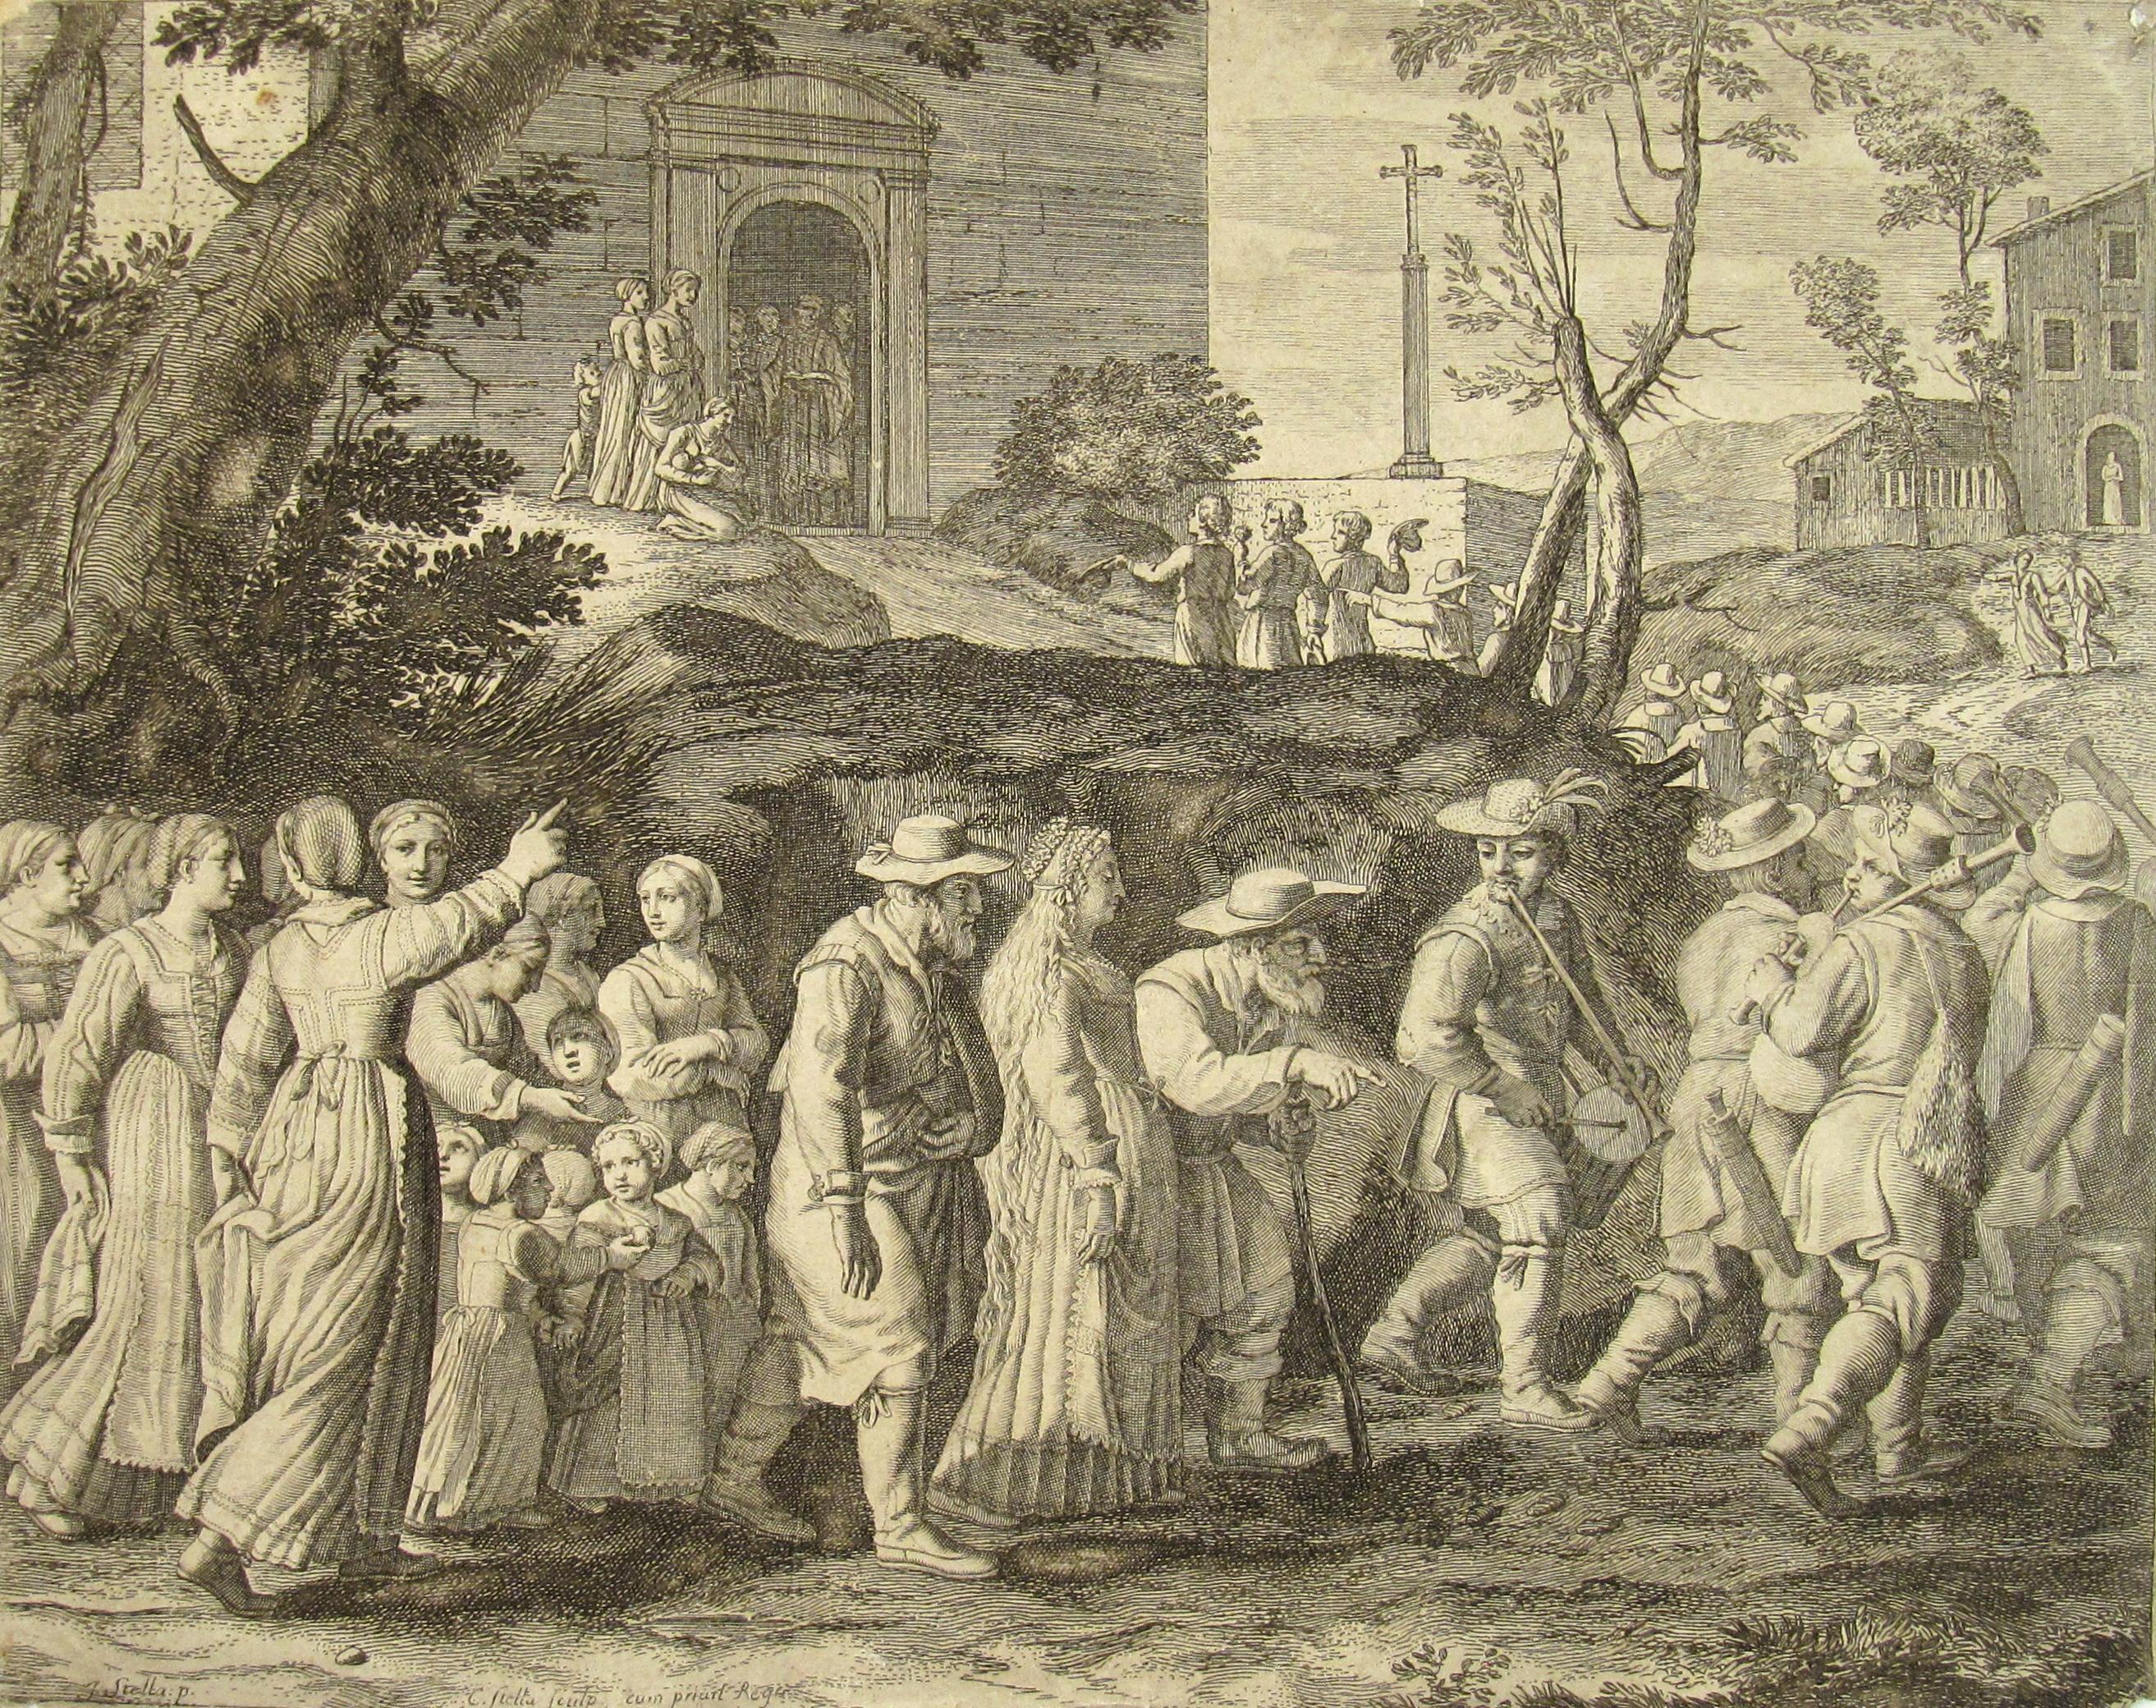 La procession de mariage - Nuptial du Cortege - gravure du 17e siècle provenant des Pastorales